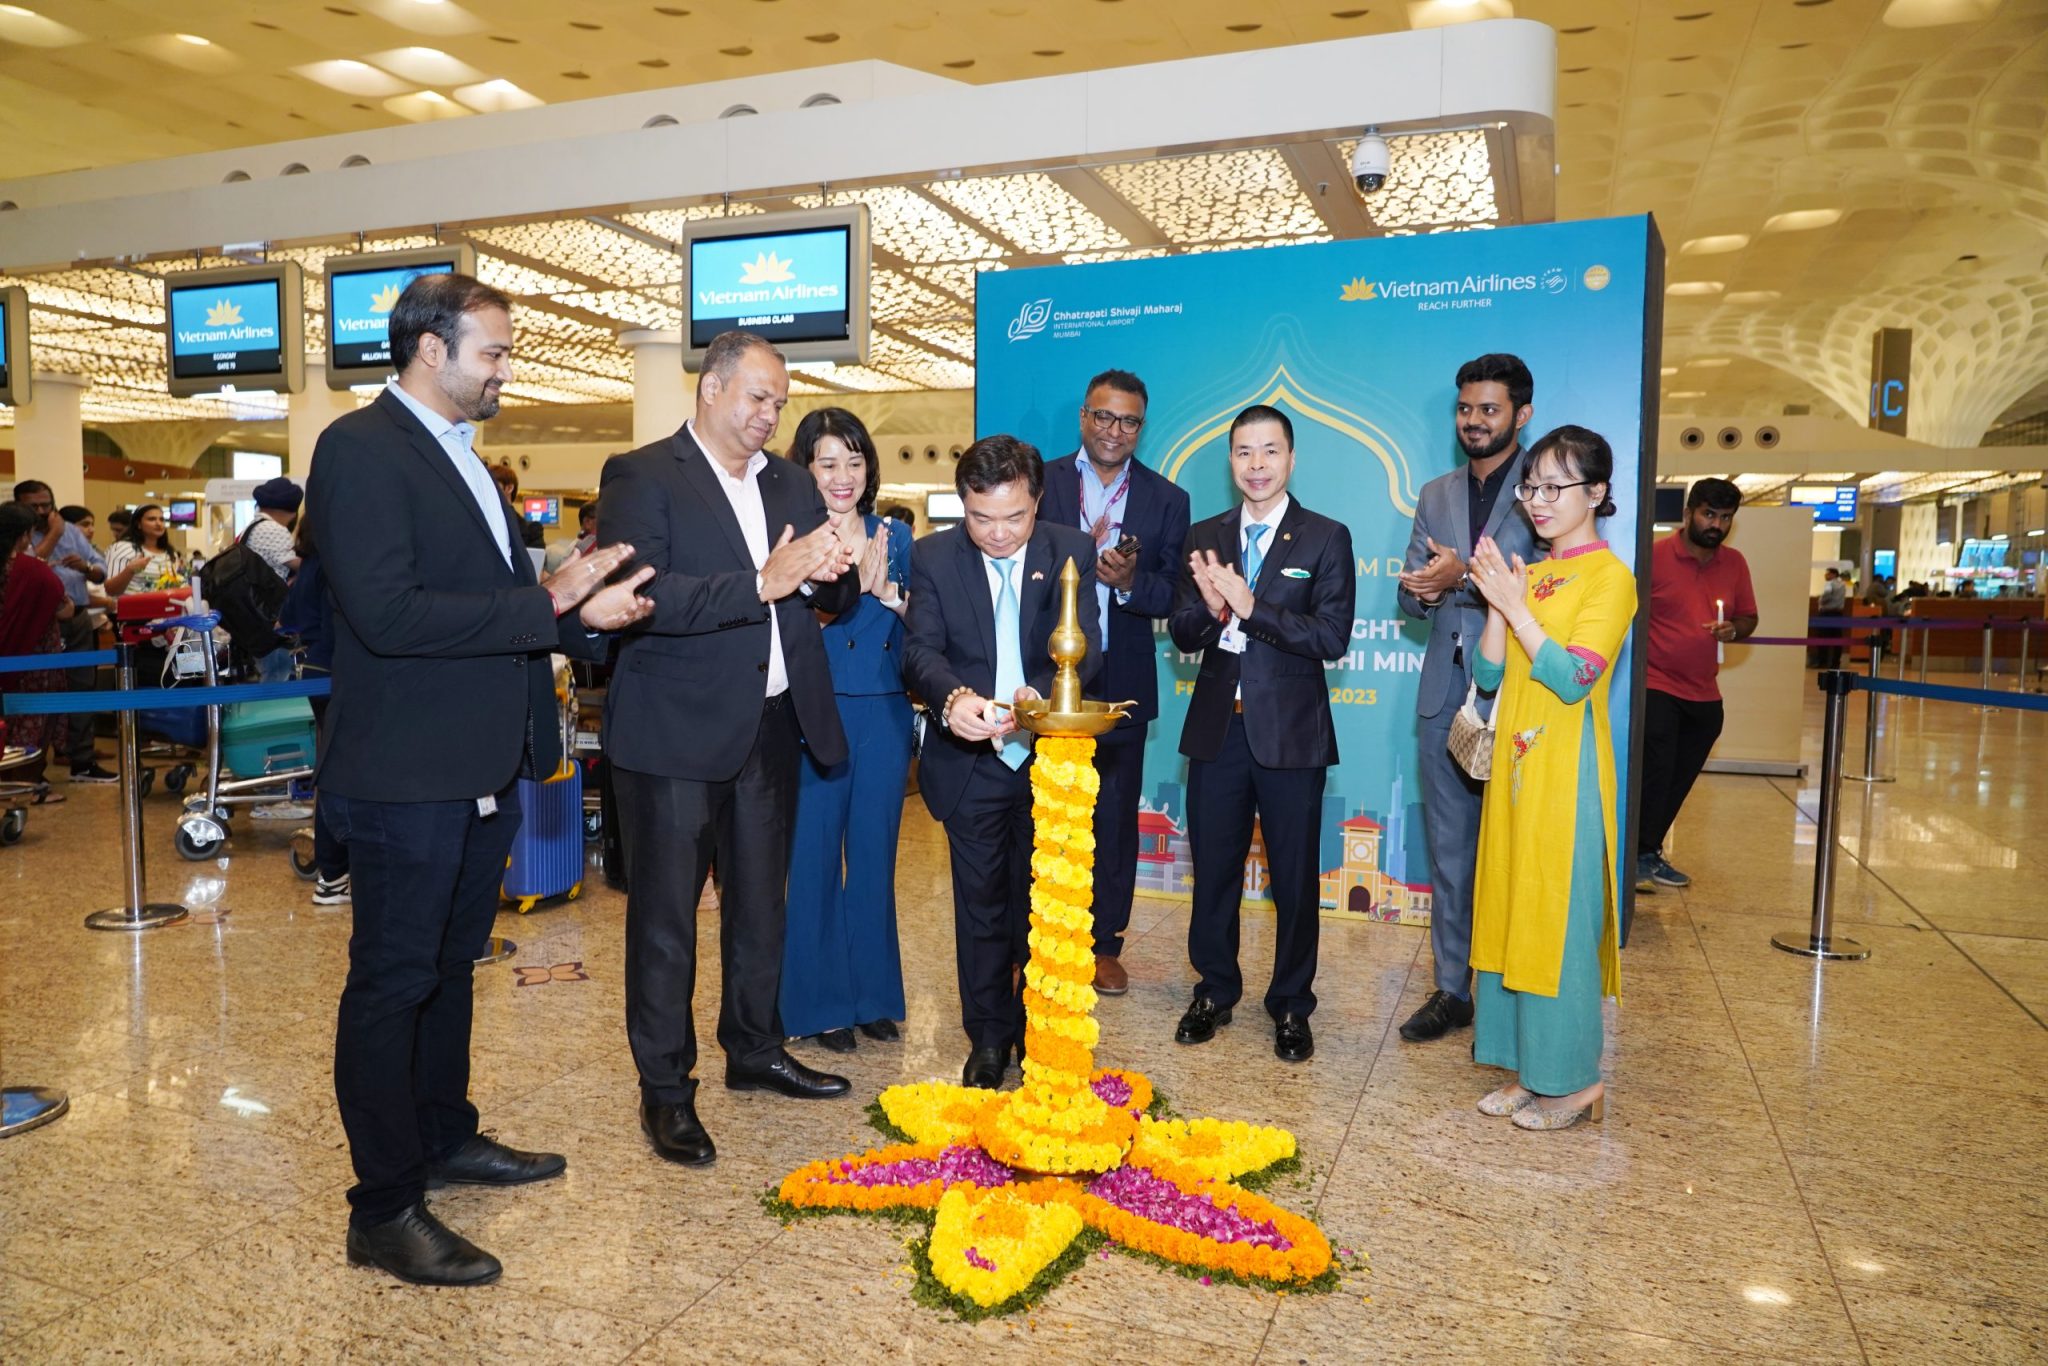 Ông Hoàng Tùng, Tổng lãnh sự Việt Nam tại Mumbai, cùng đại diện lãnh đạo Vietnam Airlines và sân bay Chhatrapati Shivaji Maharaj thực hiện nghi lễ khai trương đường bay thẳng giữa Hà Nội và Mumbai (Ấn Độ). (Ảnh: VNA)